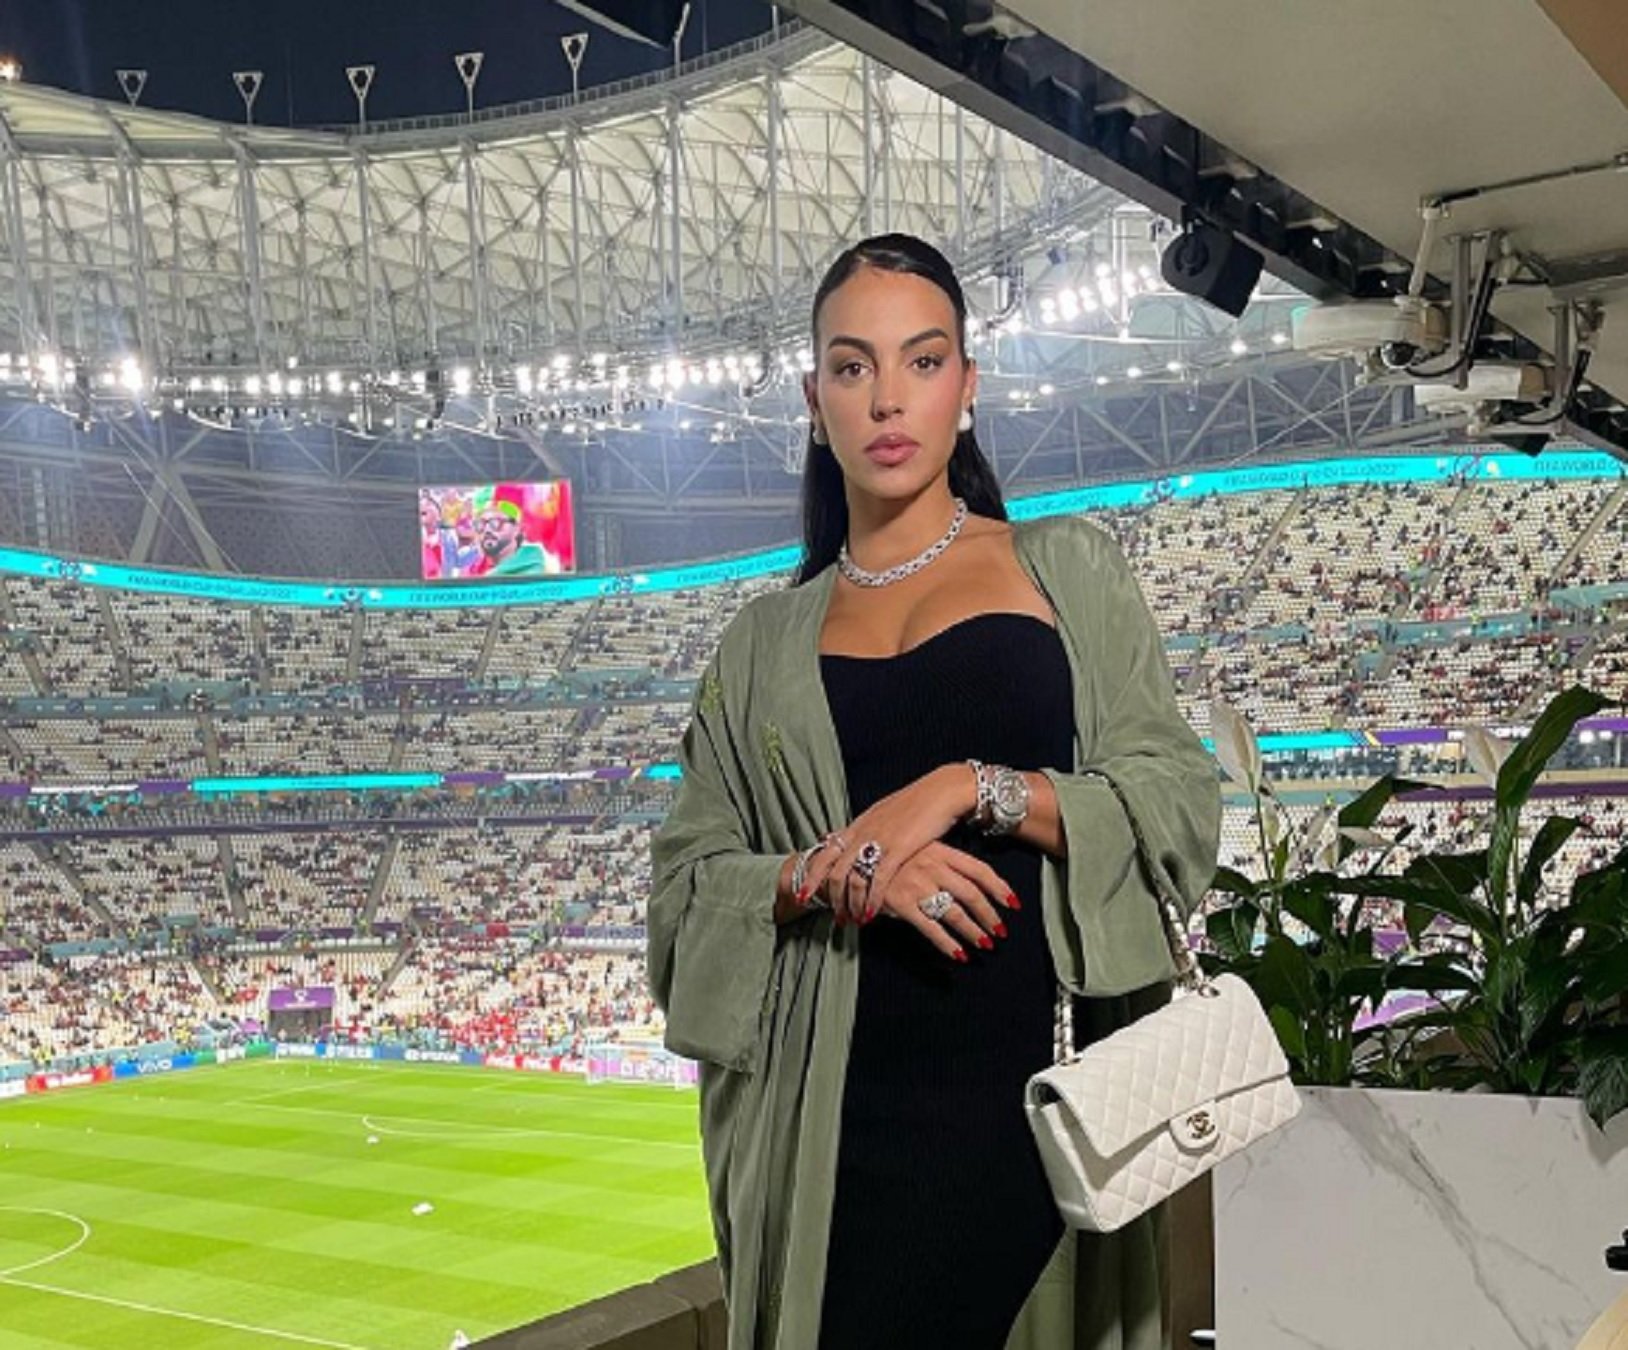 Georgina Rodríguez, la novia de Cristiano Ronaldo, irada: pulla brutal al seleccionador luso Fernando Santos